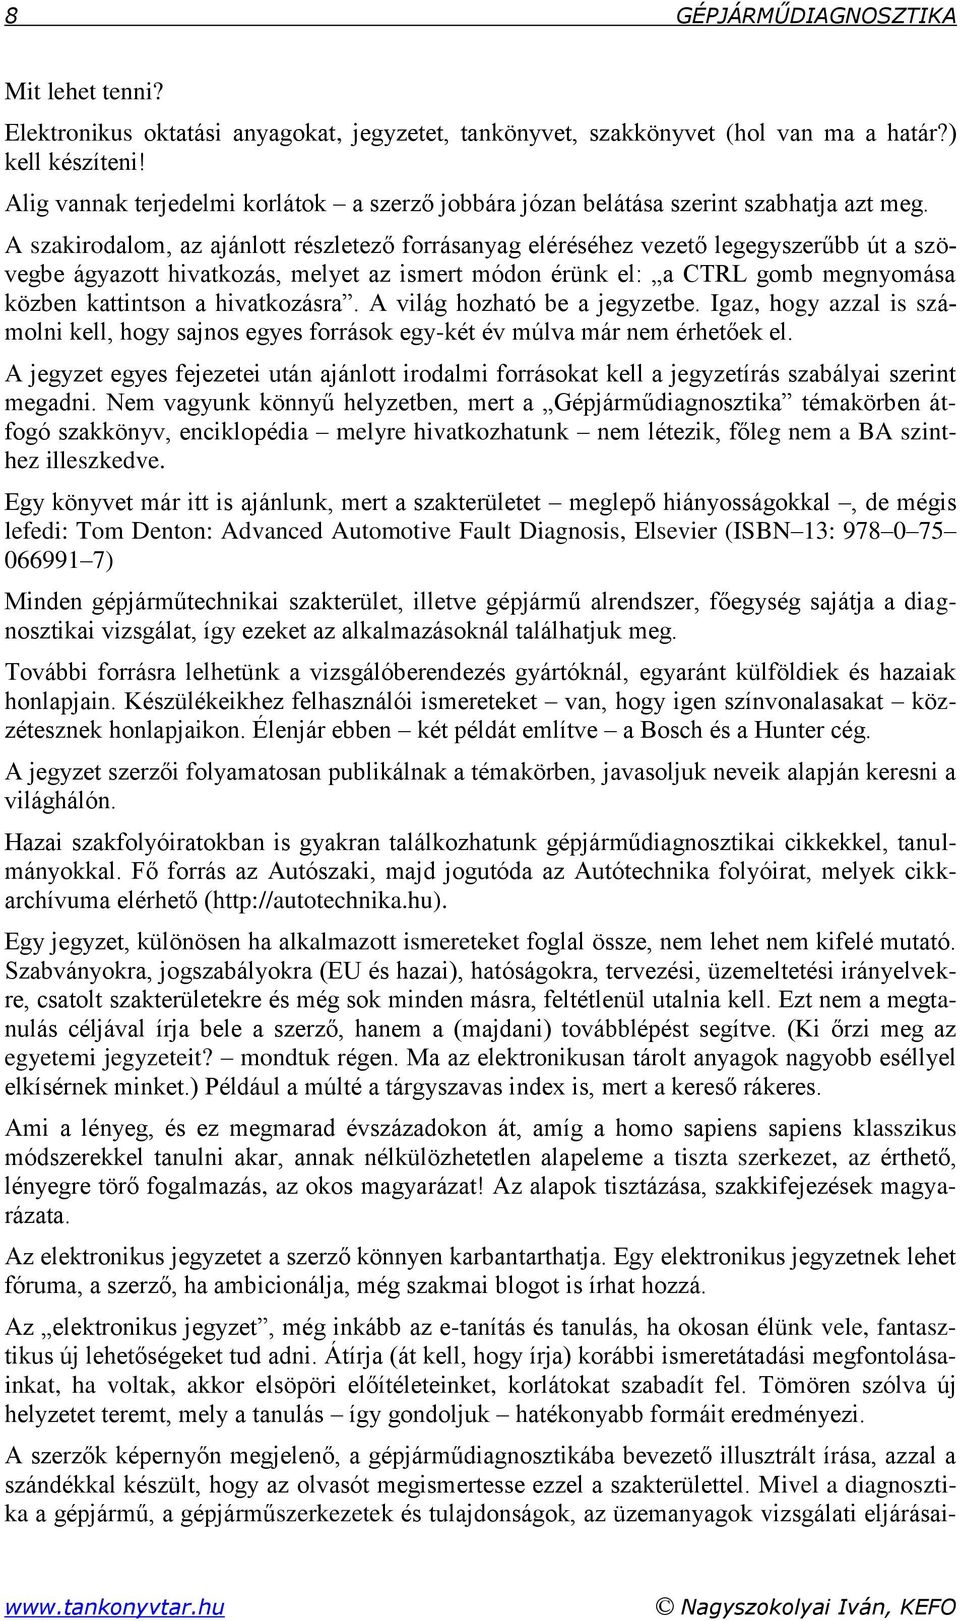 GÉPJÁRMŰ- DIAGNOSZTIKA - PDF Ingyenes letöltés